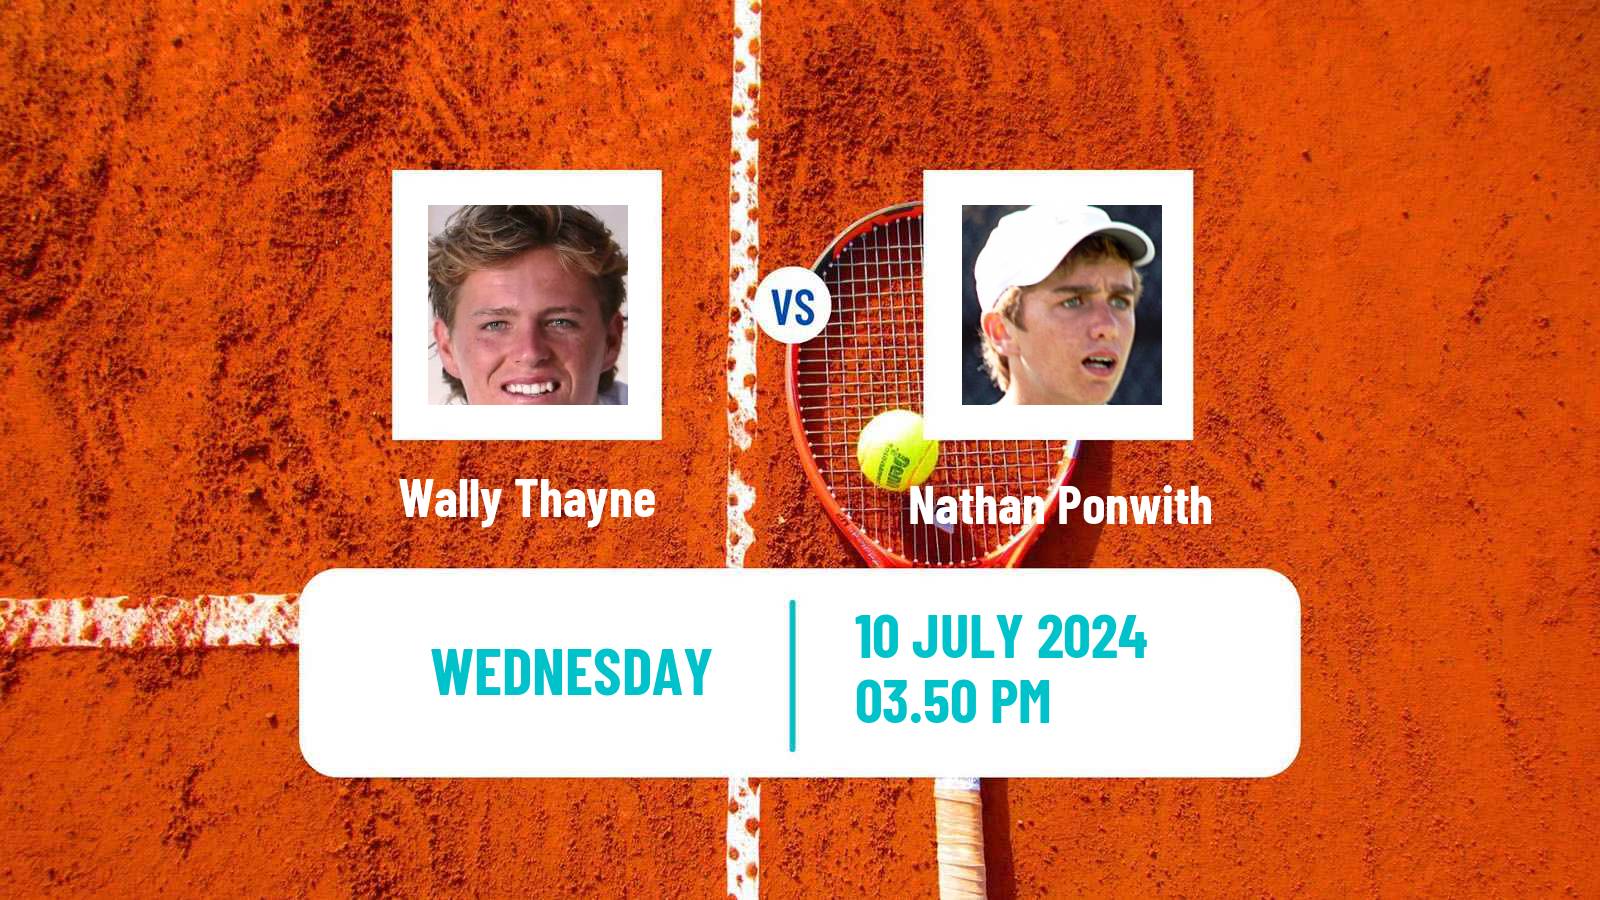 Tennis ITF M15 Lakewood Ca 2 Men Wally Thayne - Nathan Ponwith